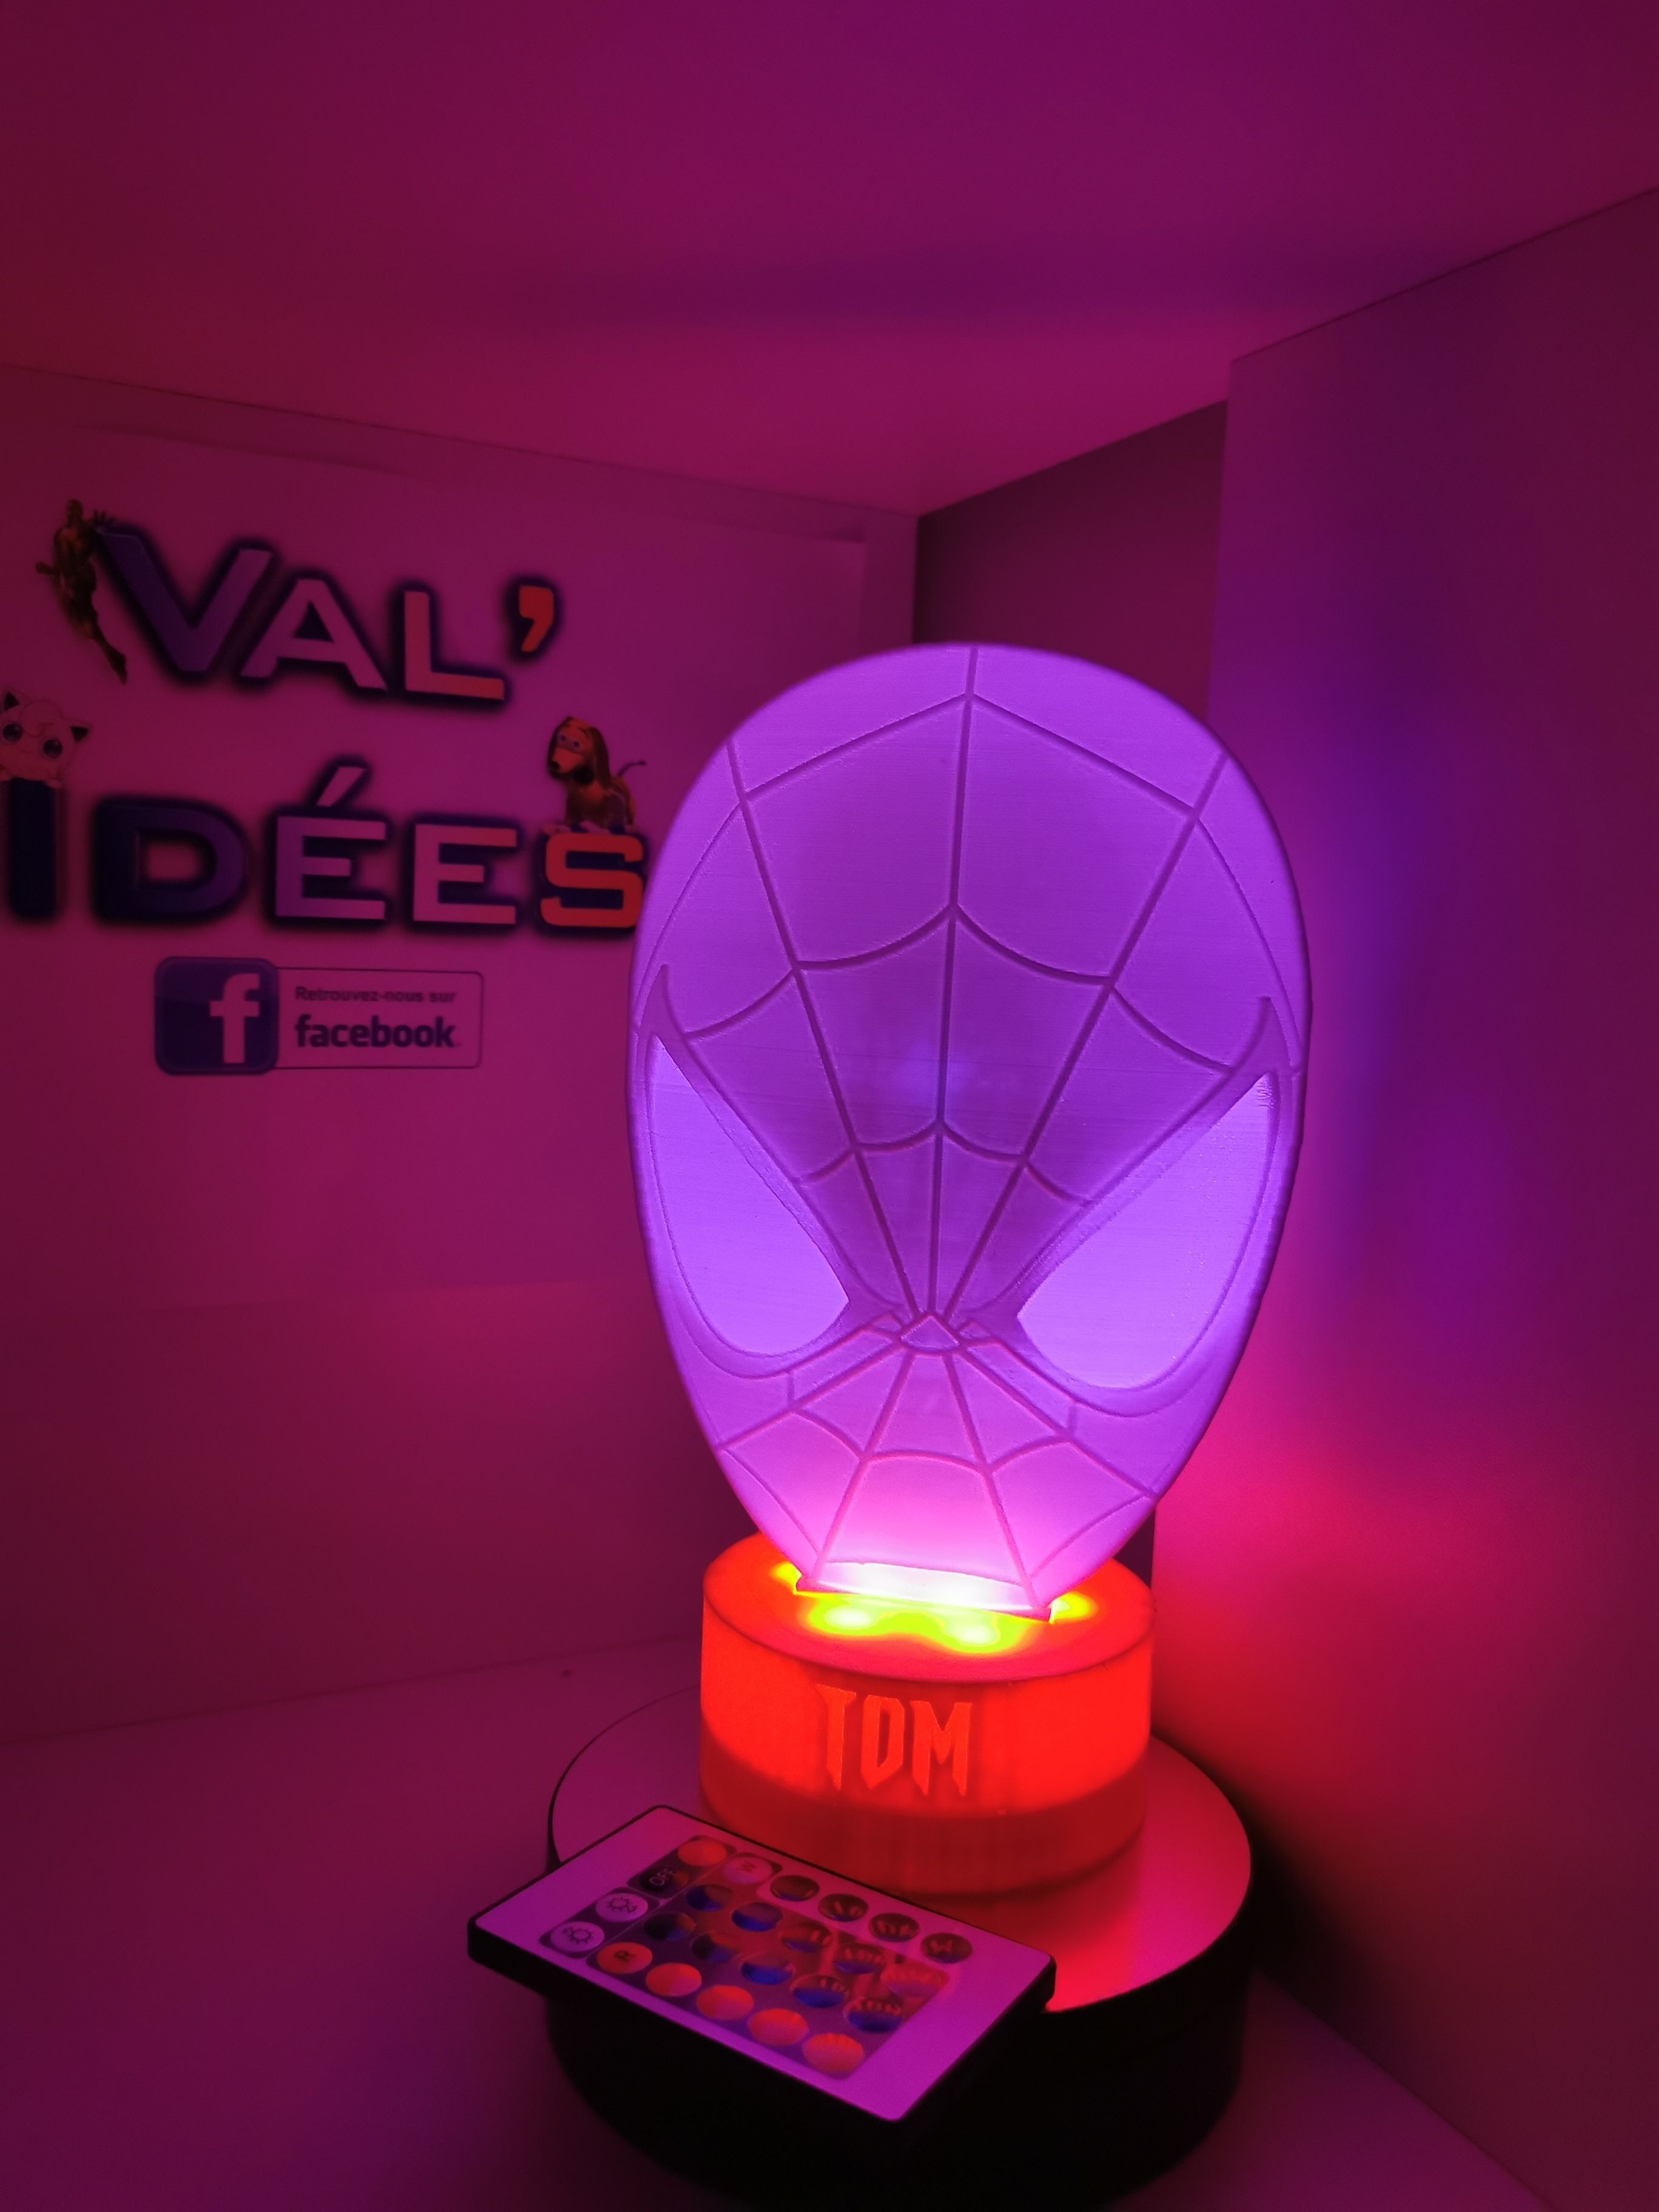 IMG_20210410_211533.jpg 3MF-Datei Spider man nightlight herunterladen • Objekt für den 3D-Druck, Val_idees